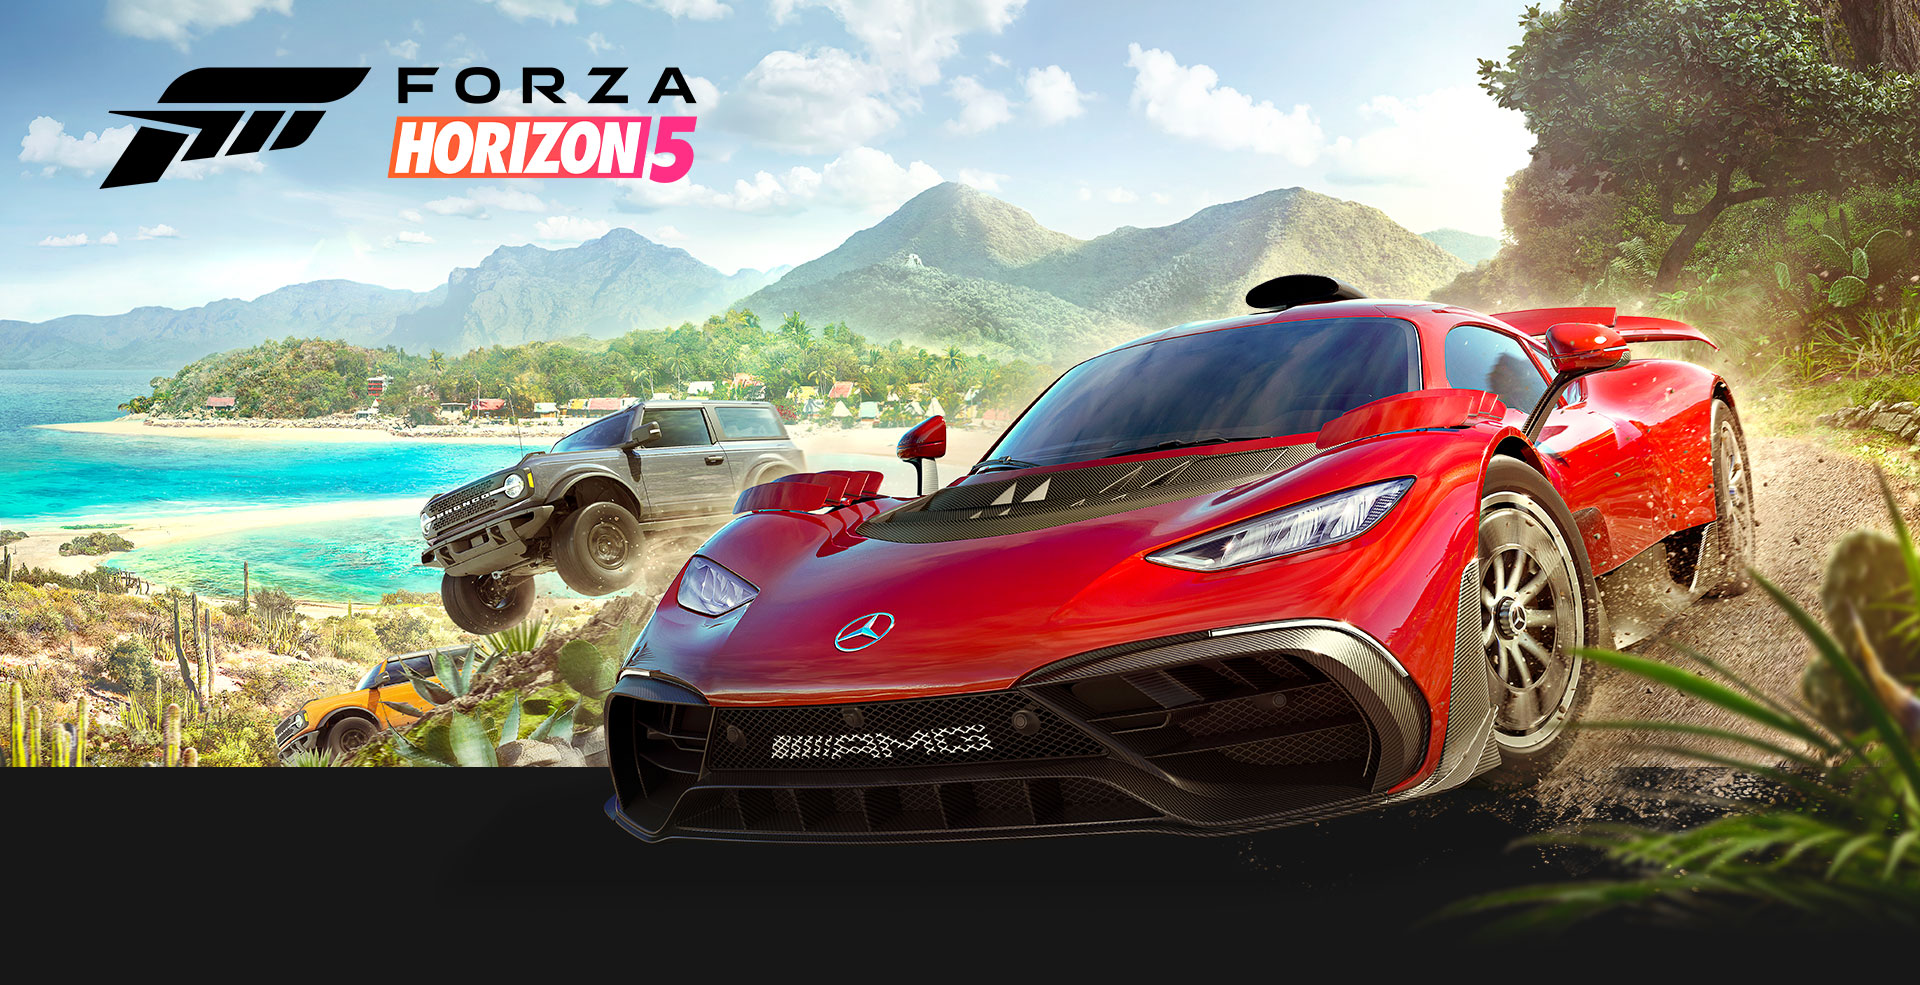 Xbox Series X – Forza Horizon 5 Bundle | Xbox